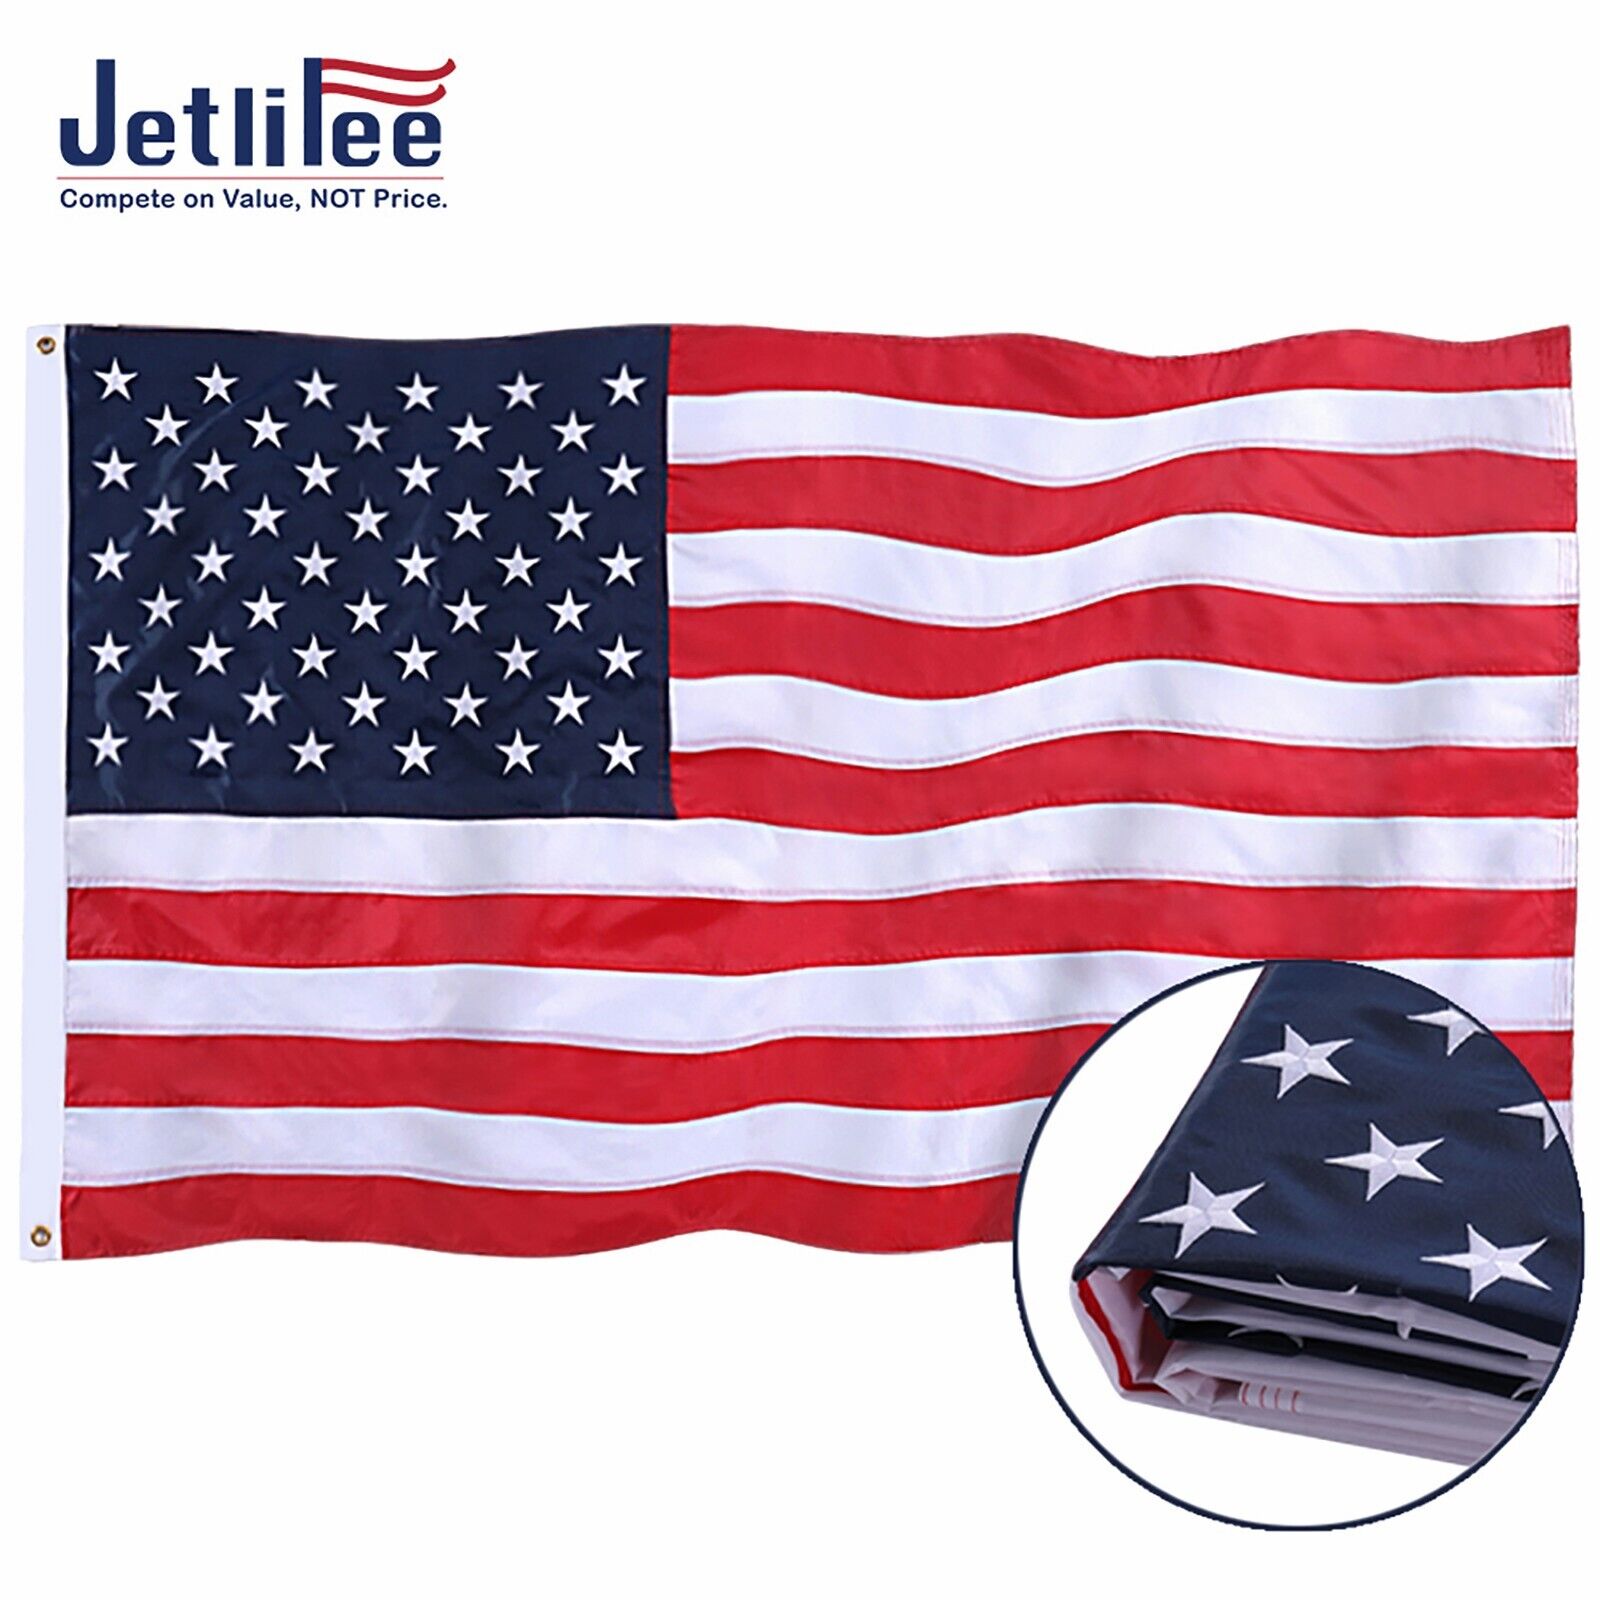 Jetlifee American Flag 3x5 ft UV Protected Embroidered Stars US USA Flag Banner